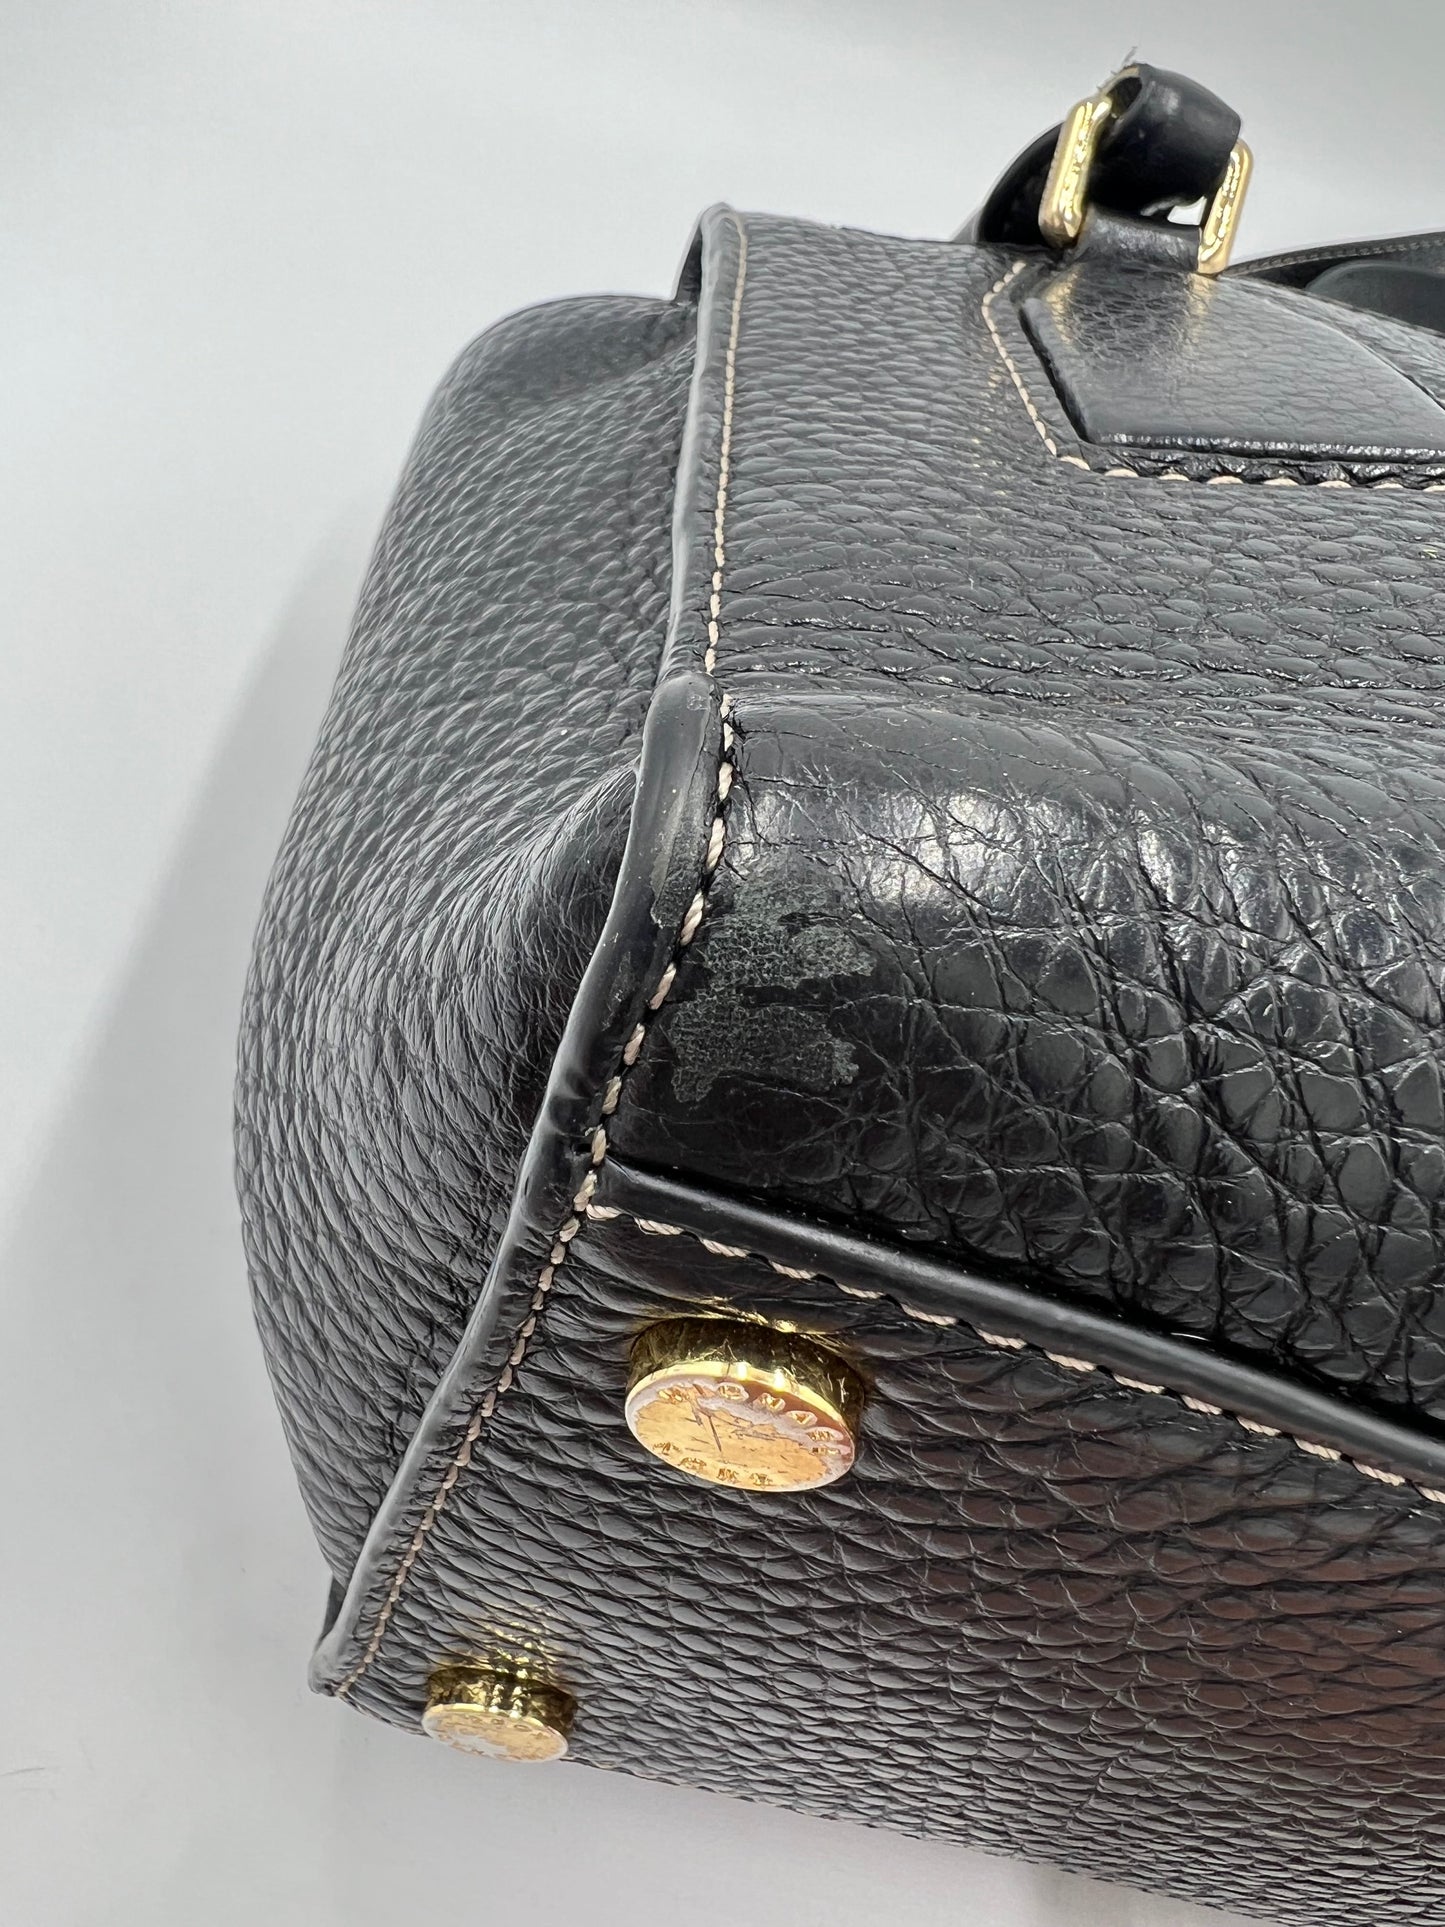 Michael Kors Pebbled Leather Handbag with Shoulder Strap